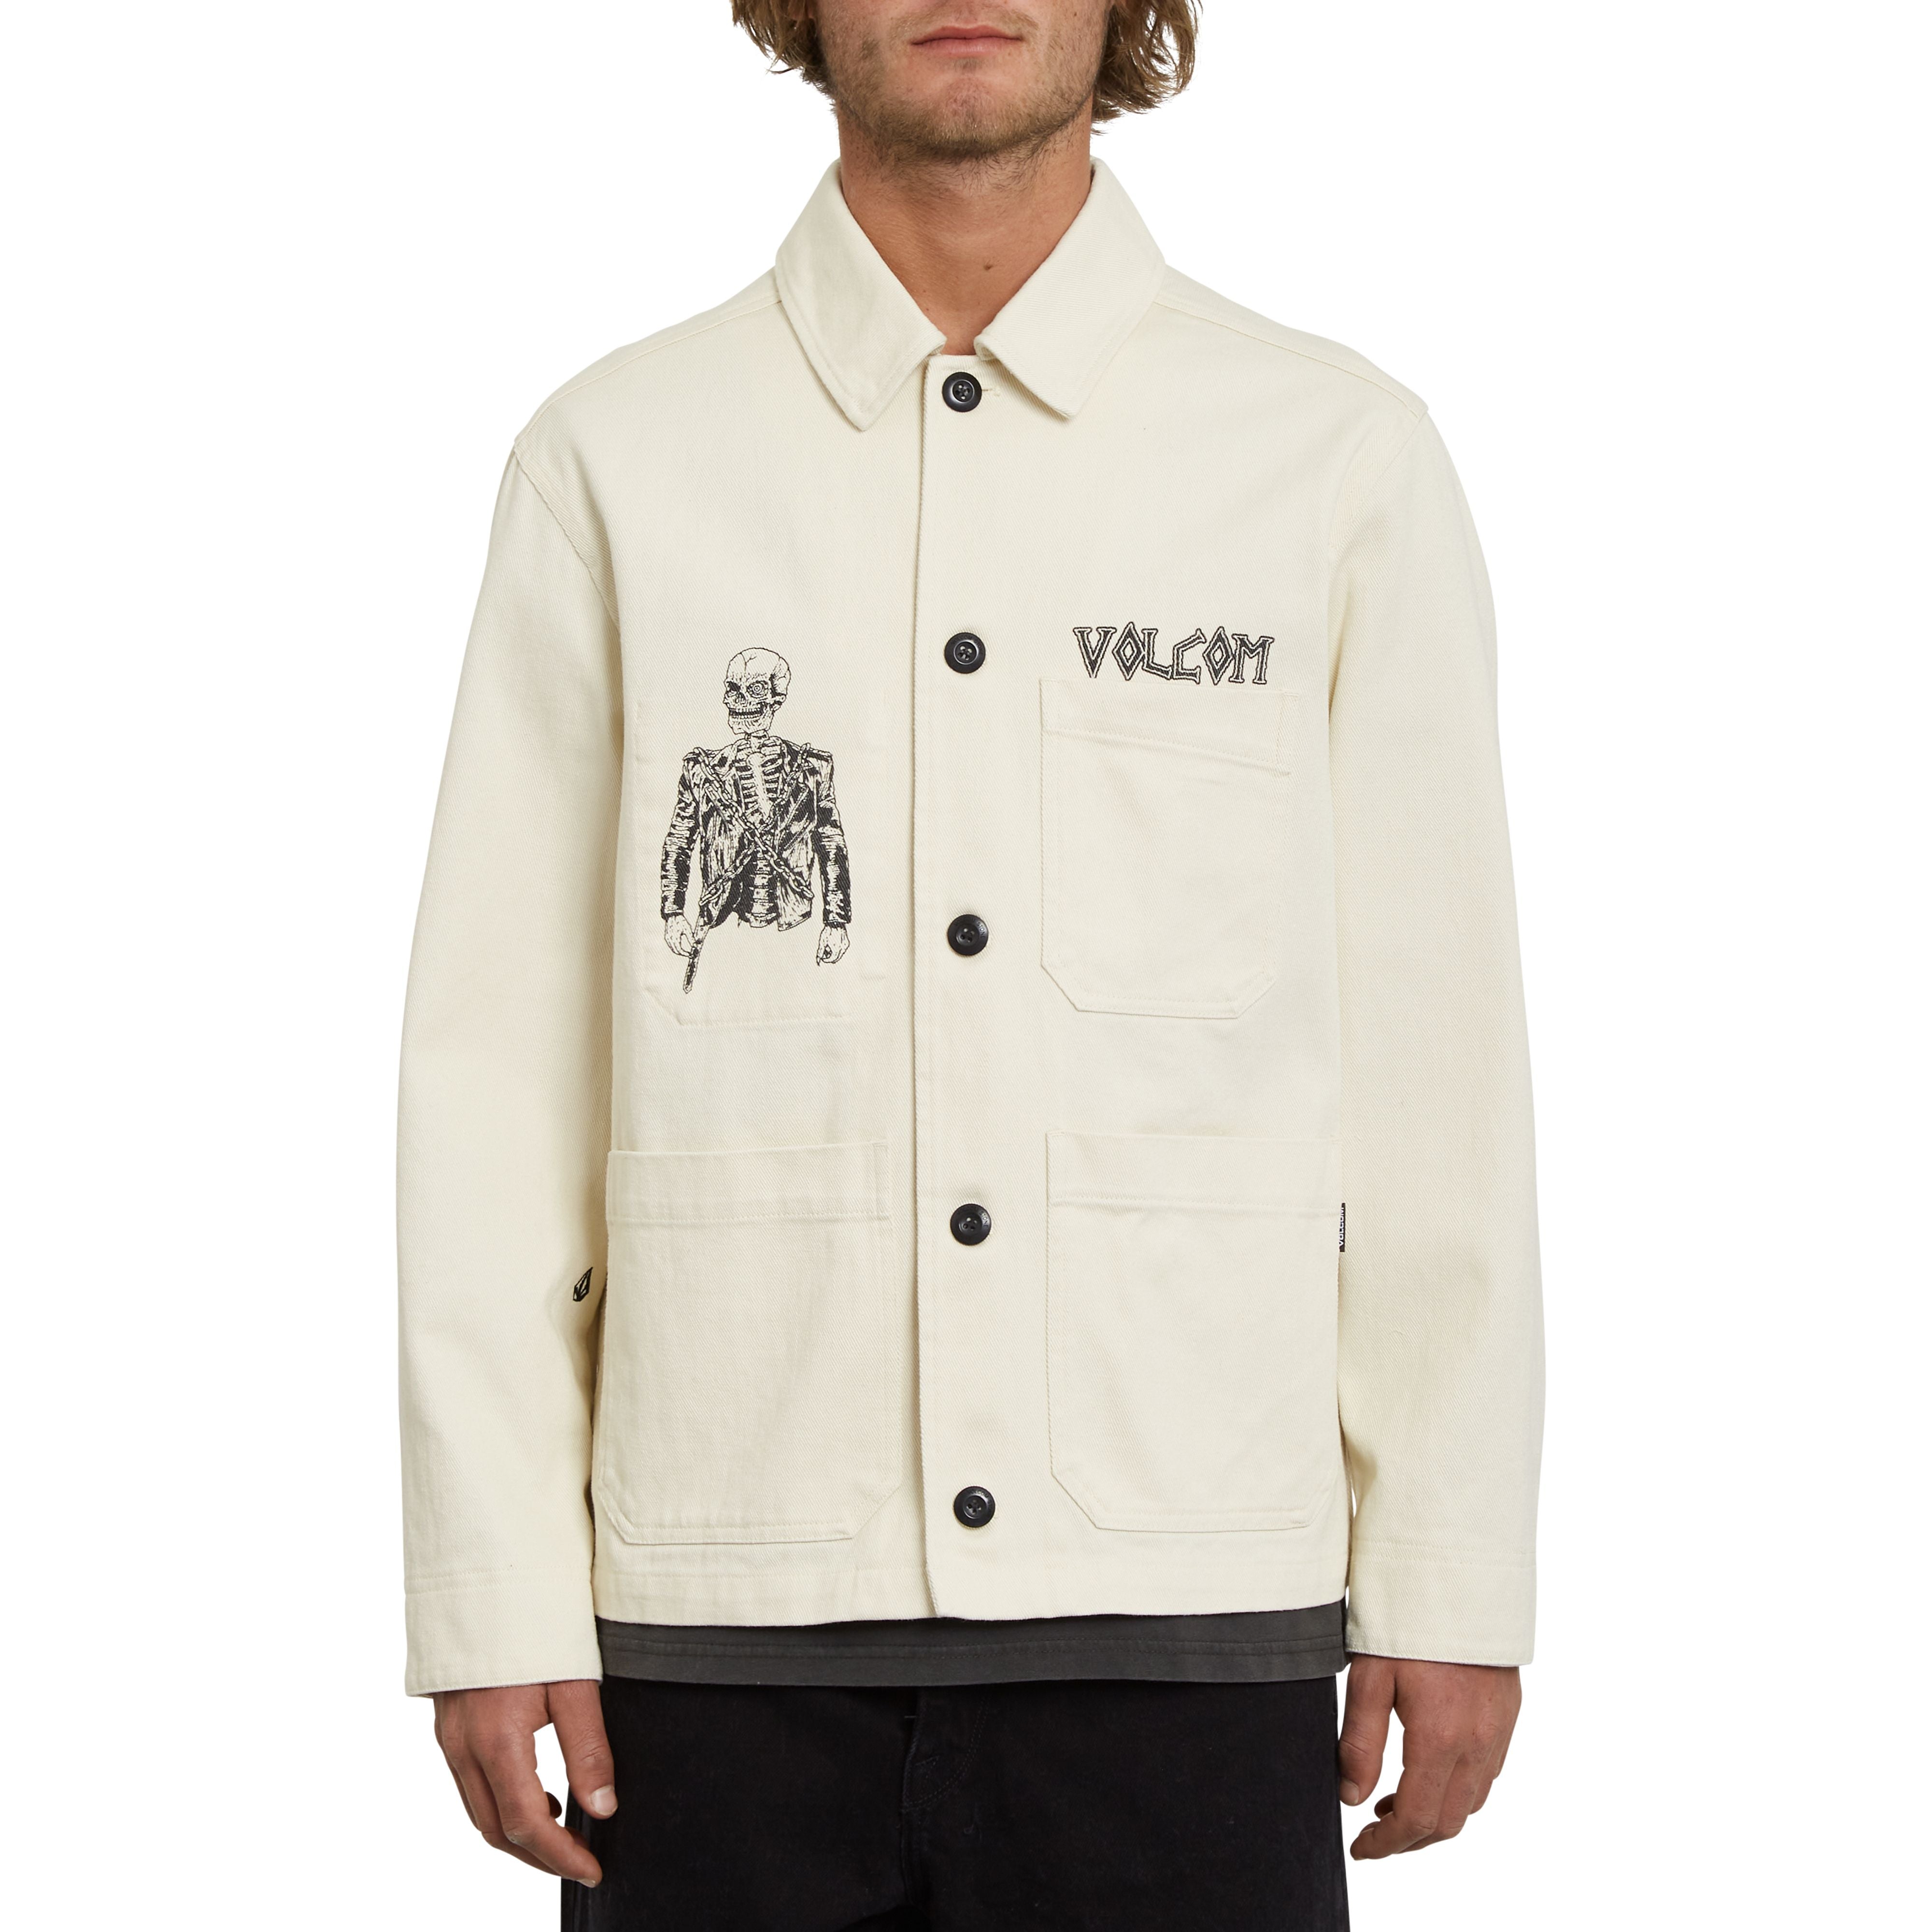 Volcom ungefilterte Jacke in Creme Weißt mit Großer Siebdruck art auf Brust und Rücken. Brust, Vorher und Innentasche vorhanden.